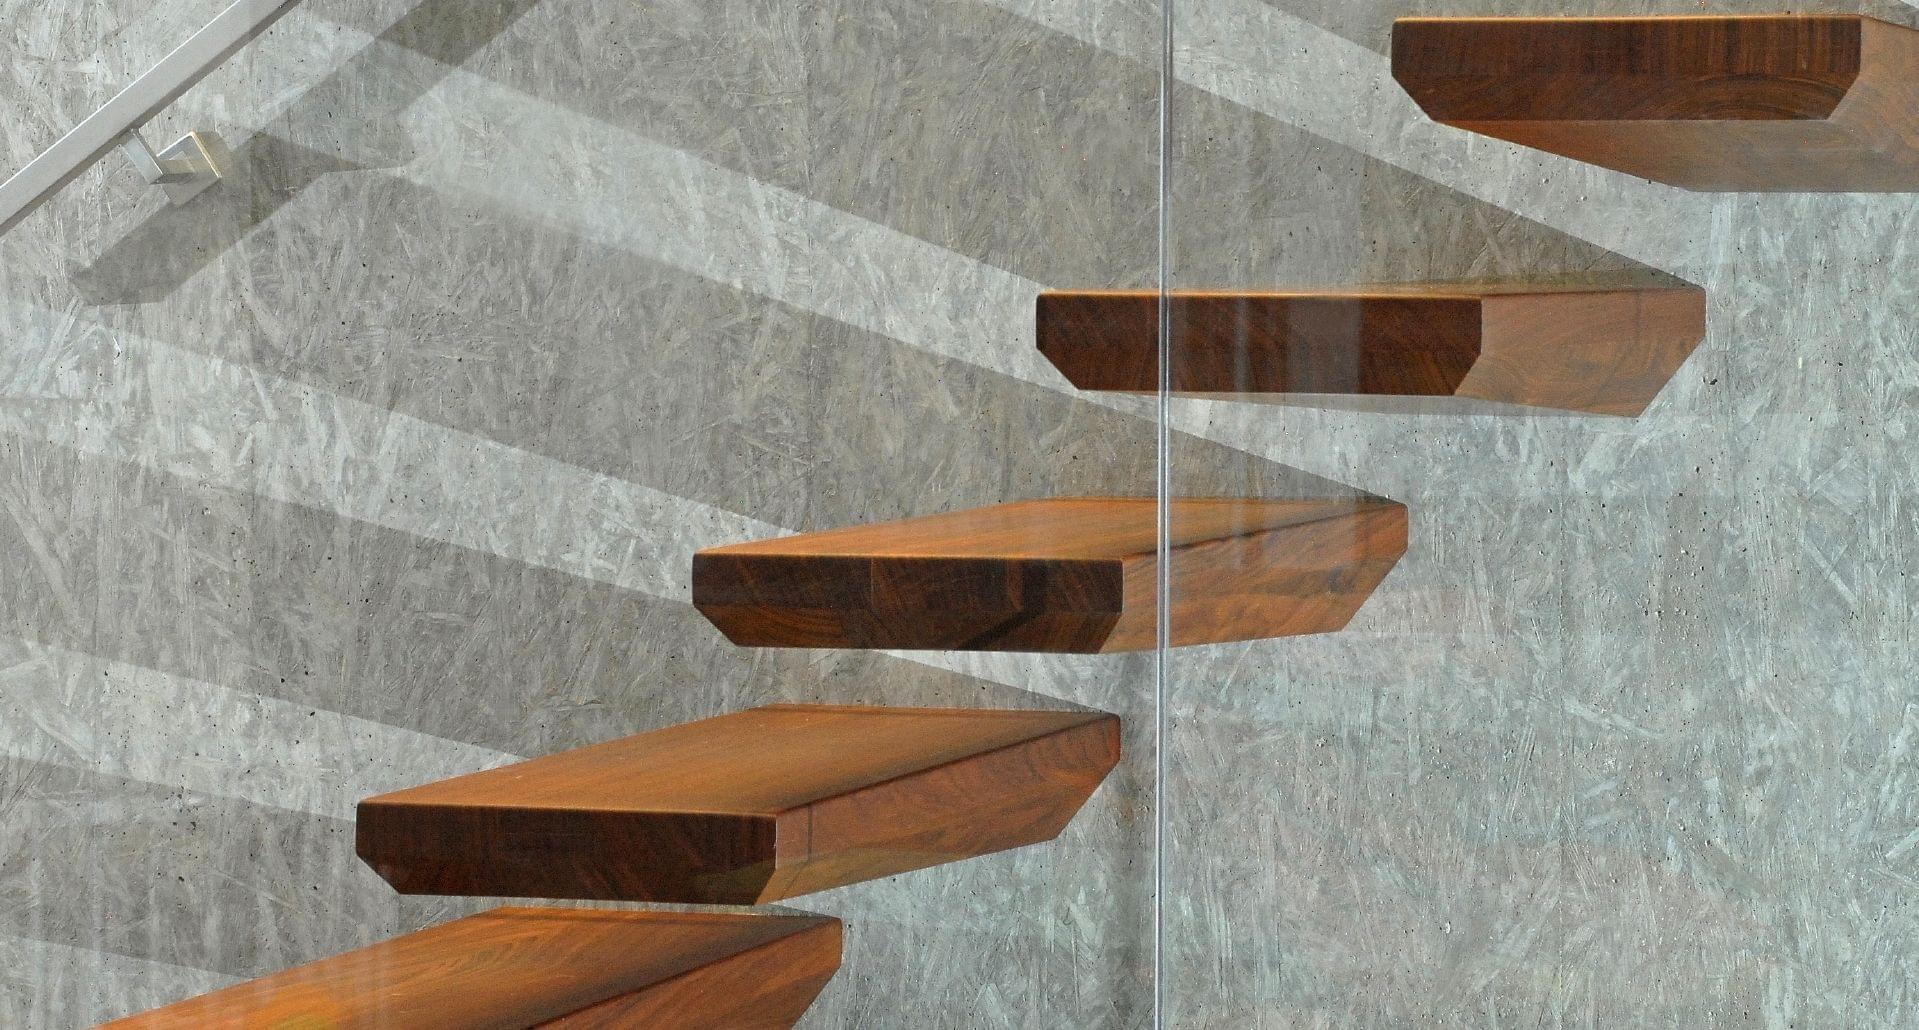 Holztreppe EGO gerade Kragarmtreppe mit Edelstahl Handlauf und Glaswand